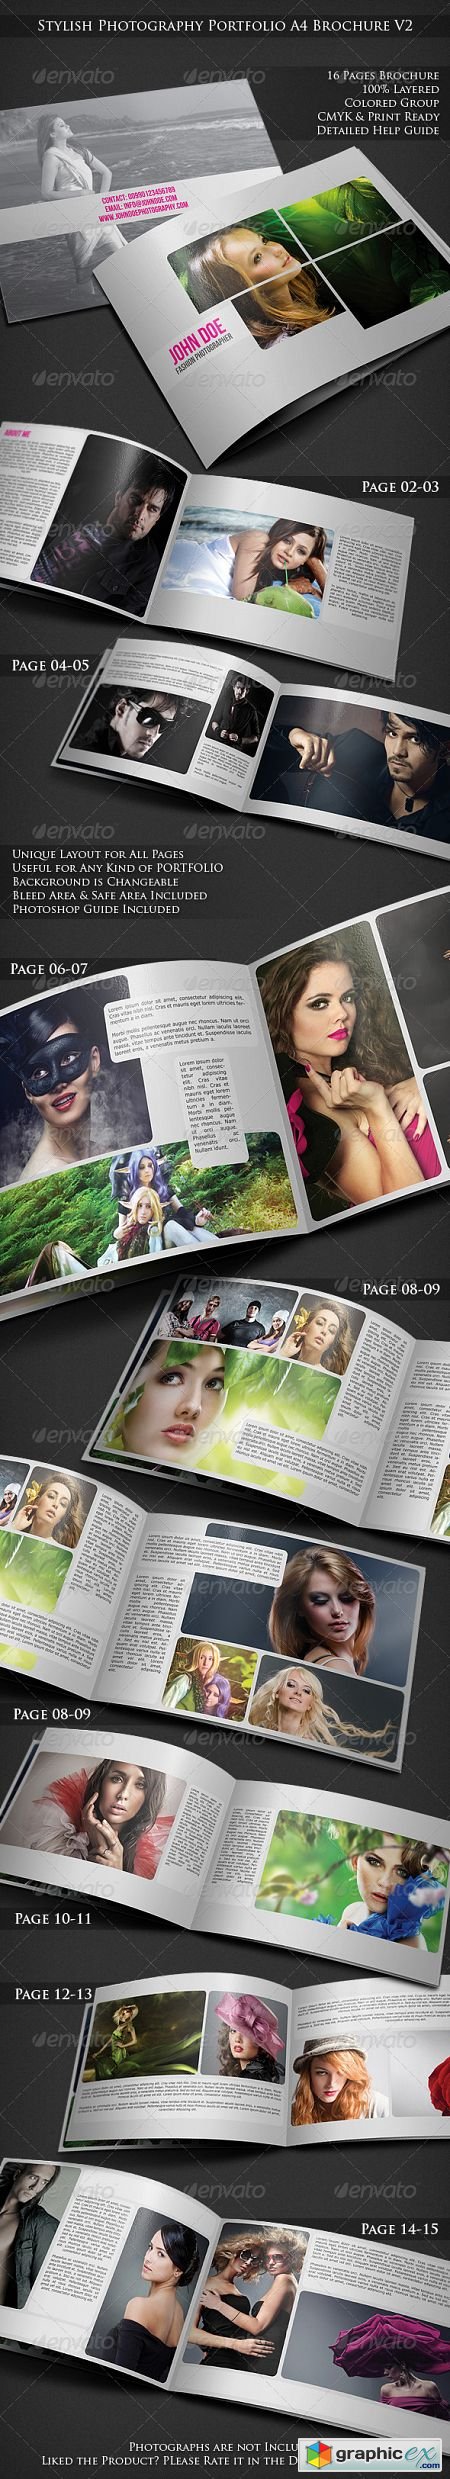 Stylish Photography Portfolio A4 Brochure V2